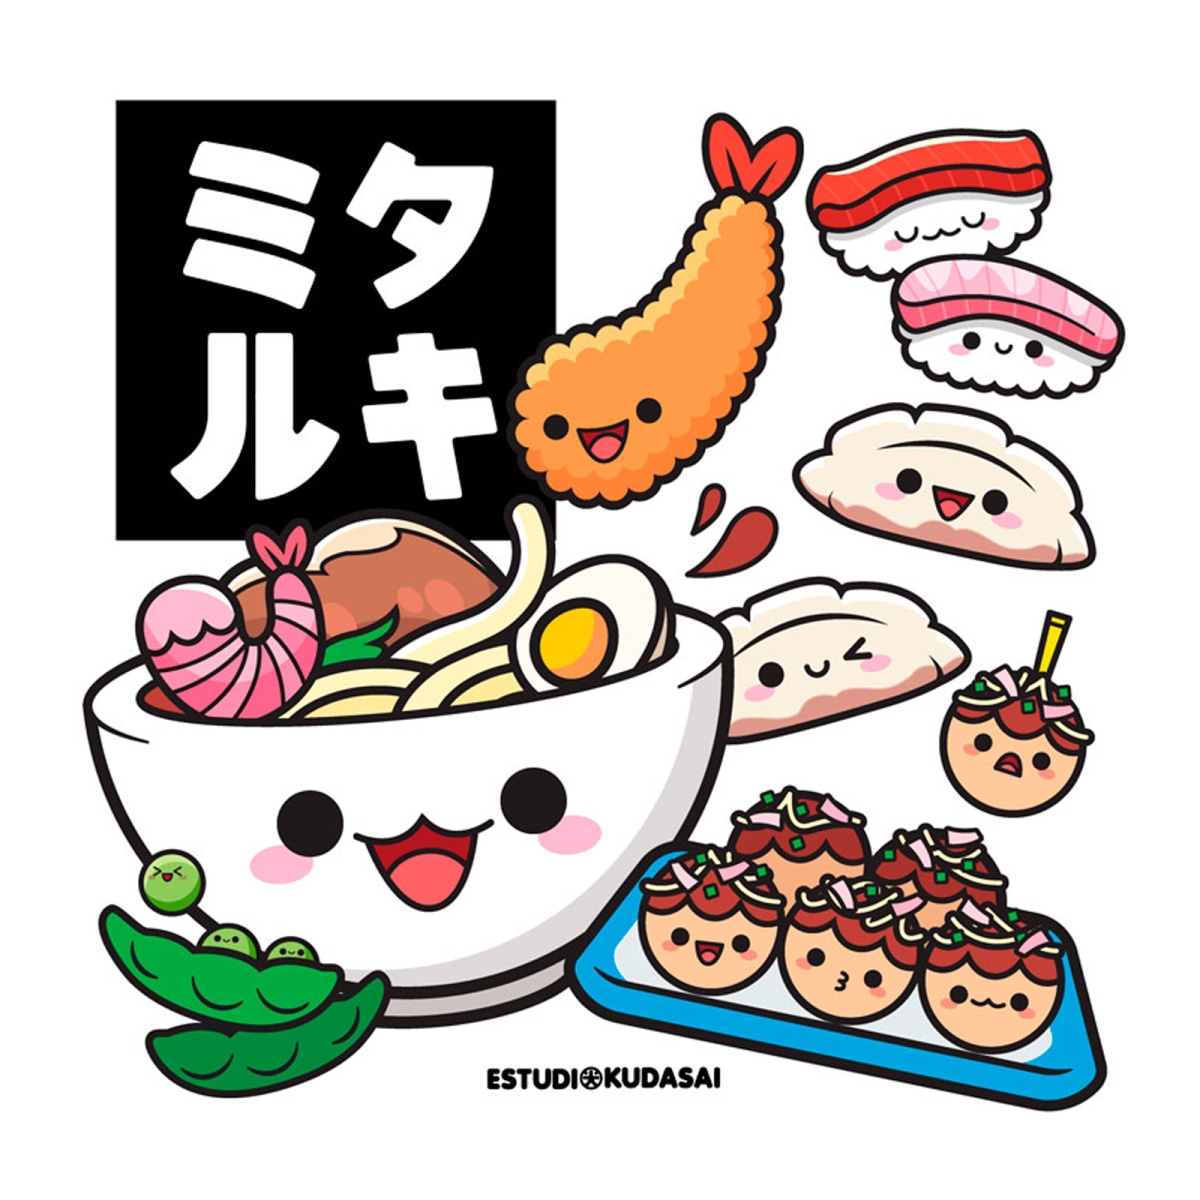 What Is Kawaii? - Understanding Japan Cute Culture